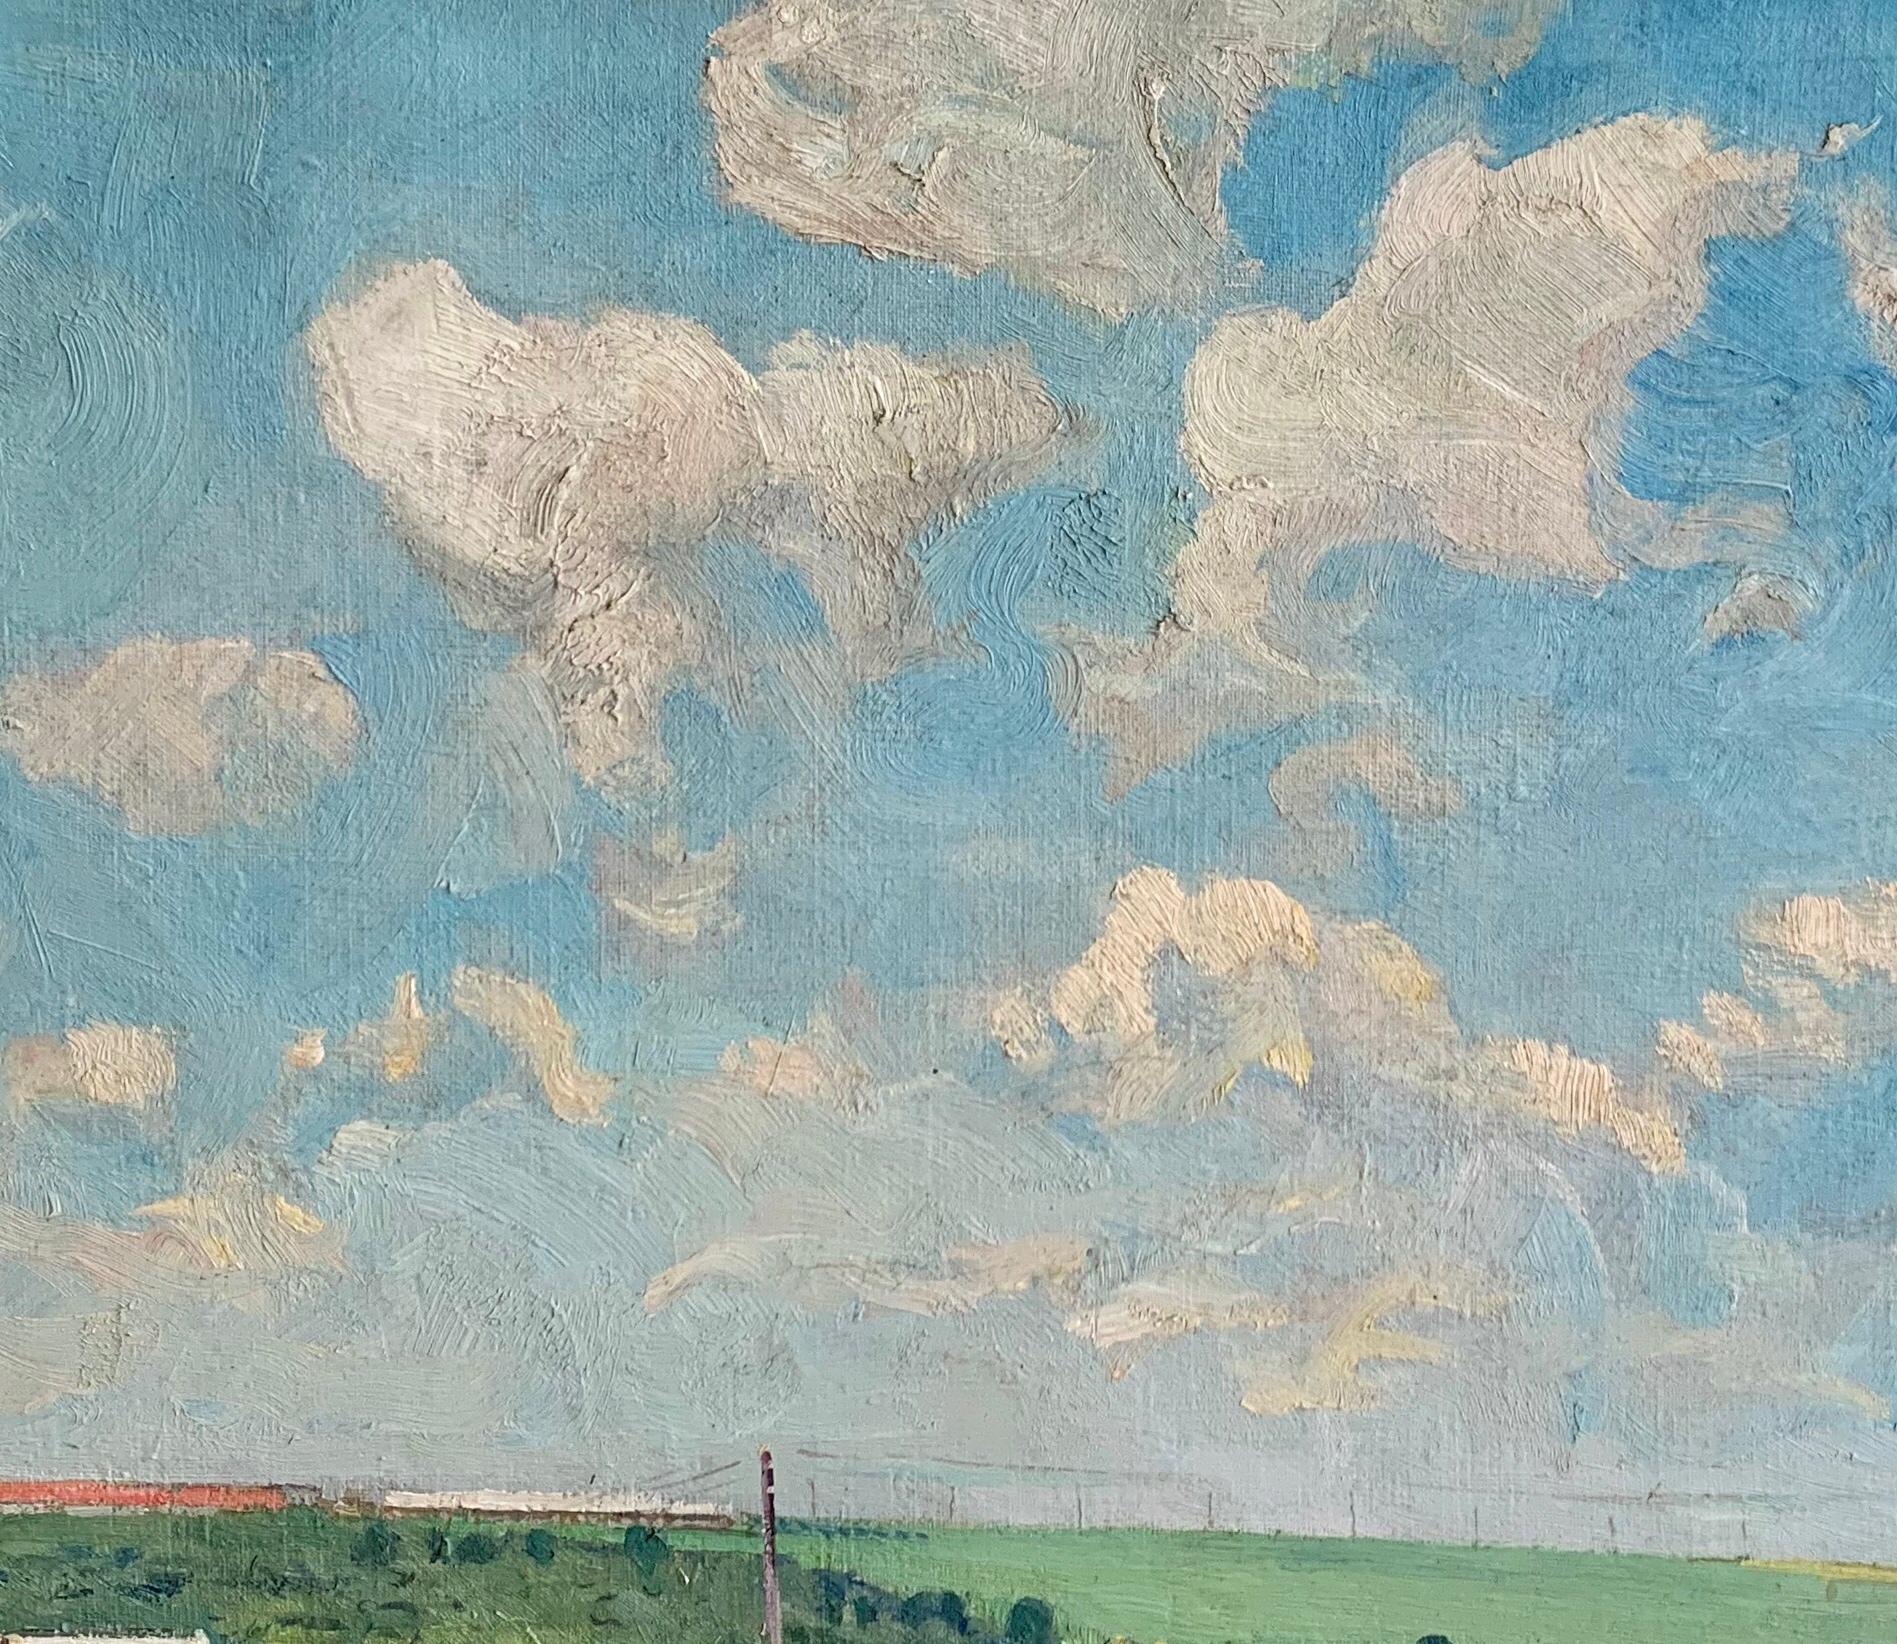 Vintage Landscape Painting Oil Canvas Original Art Spring Field by Karpushevsky For Sale 3